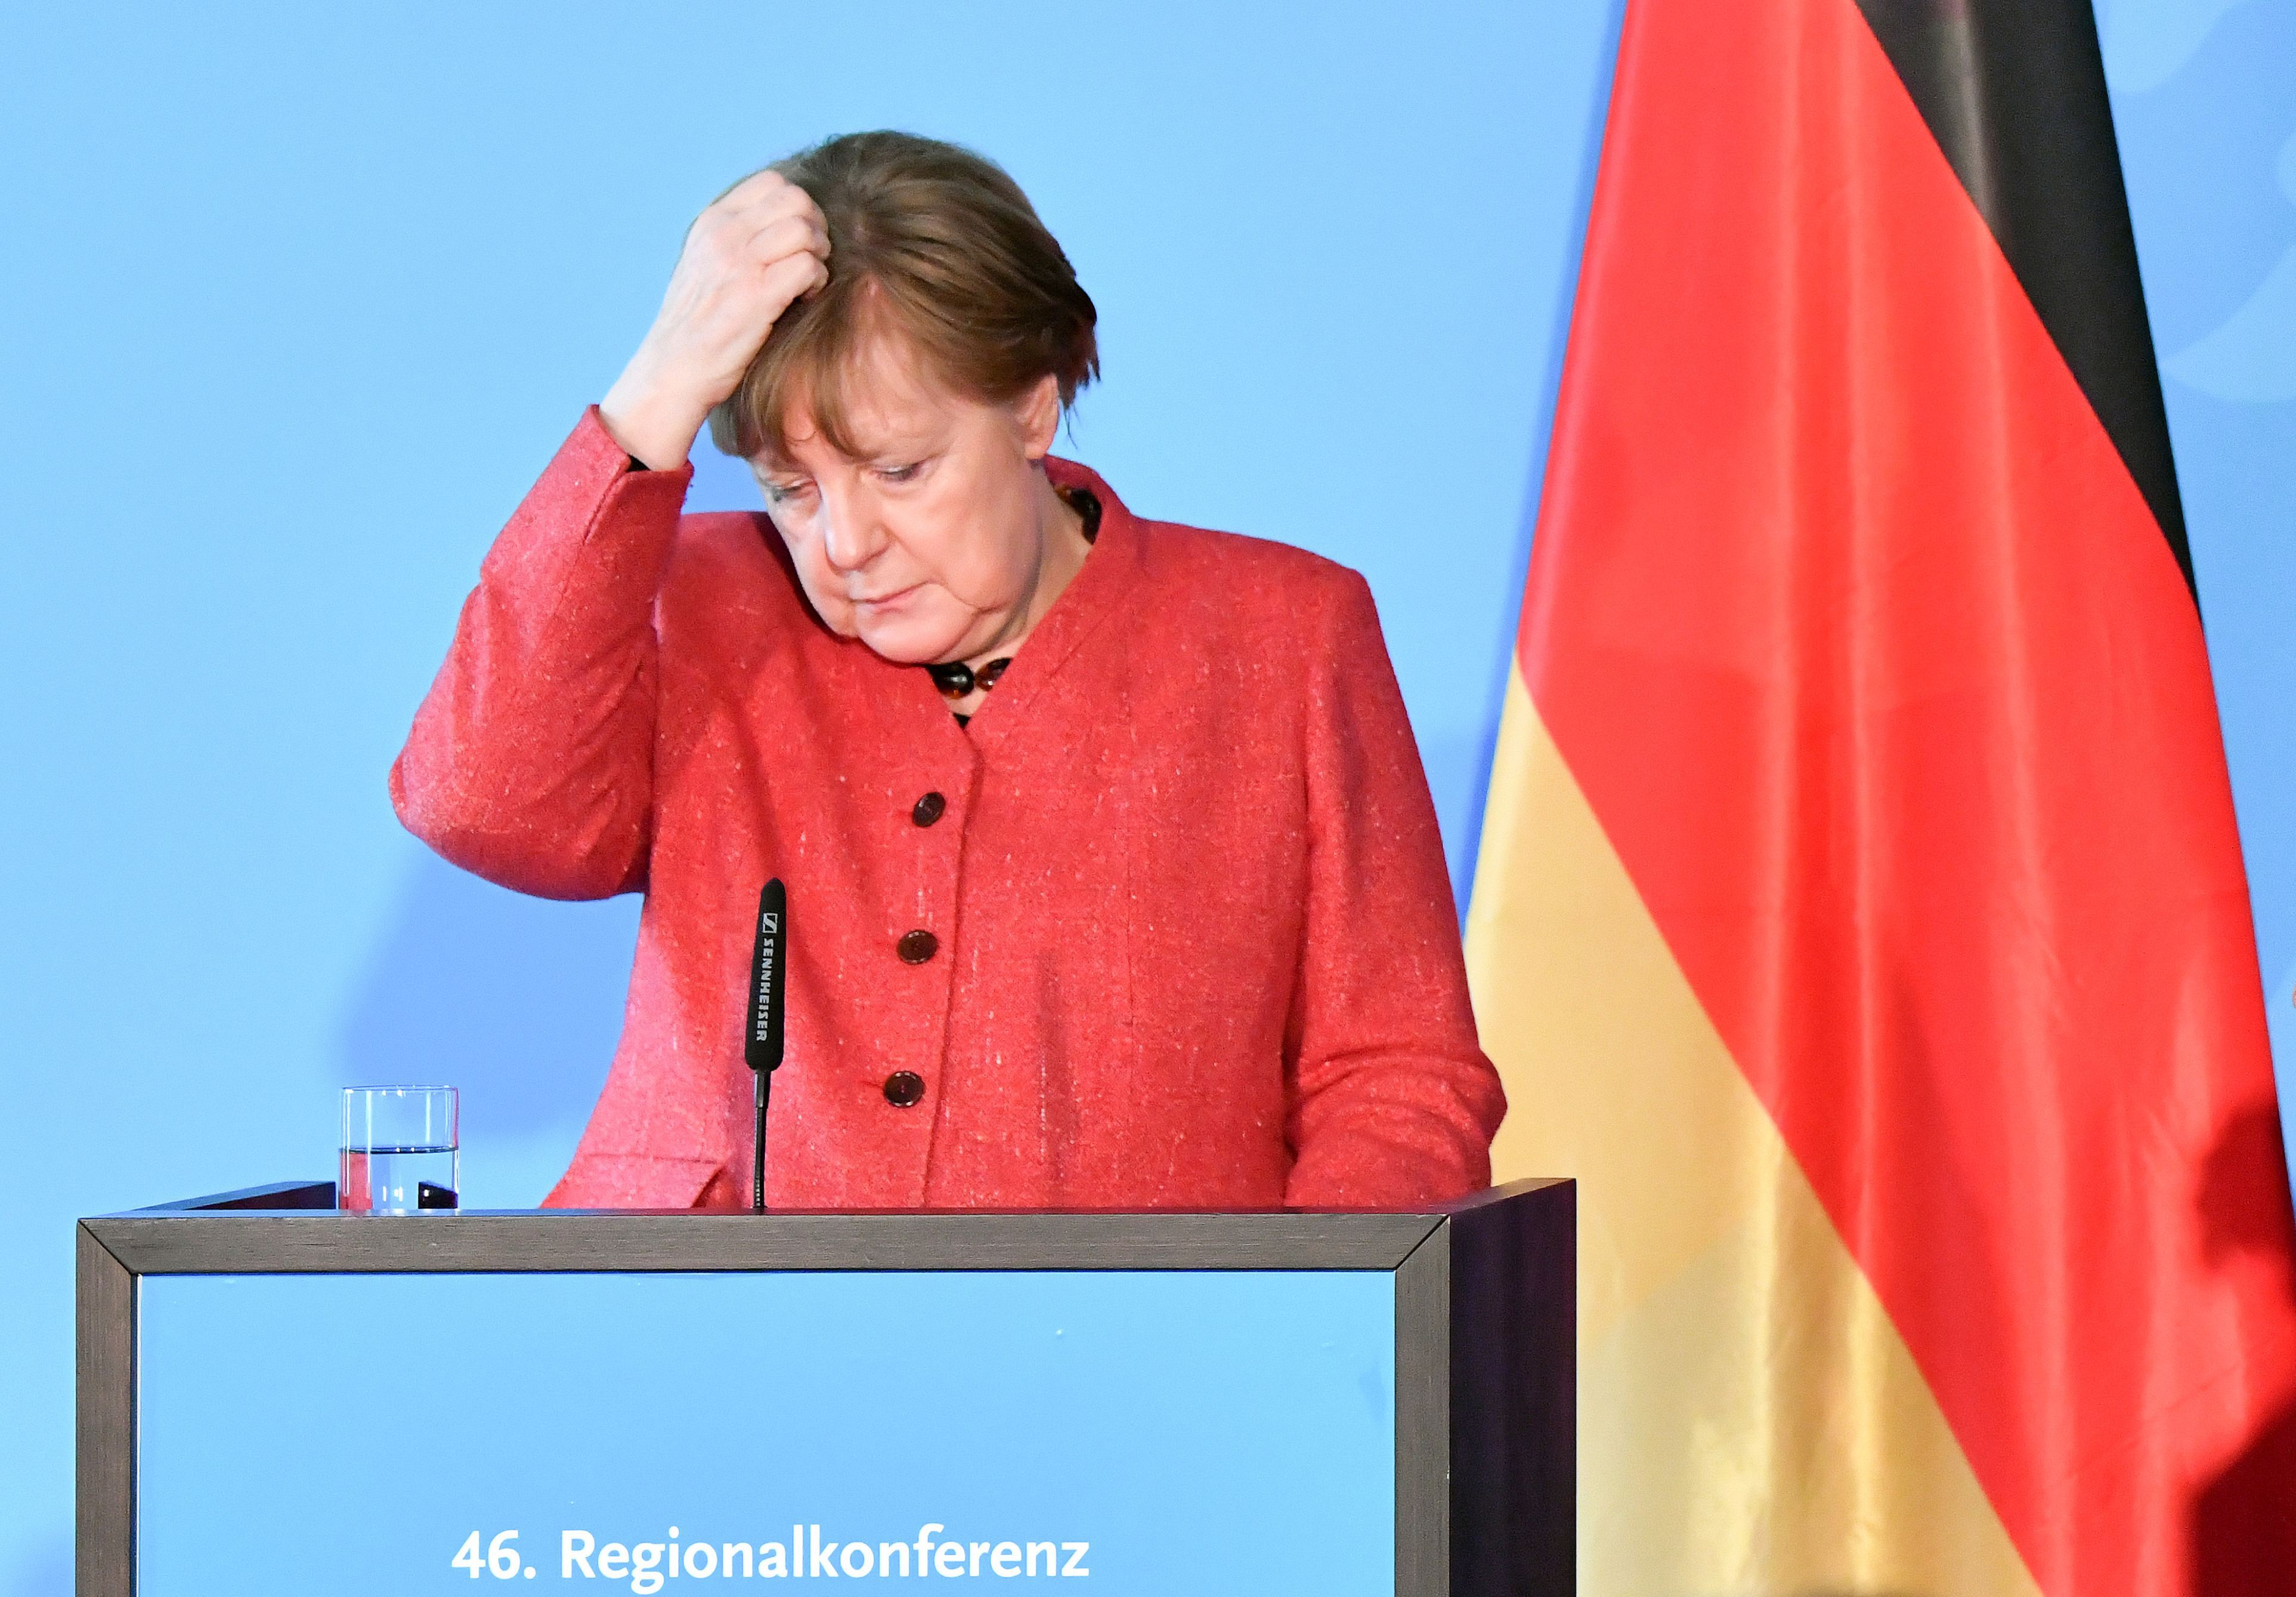 Germania începe să tuşească iar gripa se apropie de România: Guvernul german îşi reduce la jumătate previziunile de creştere economică pentru 2019